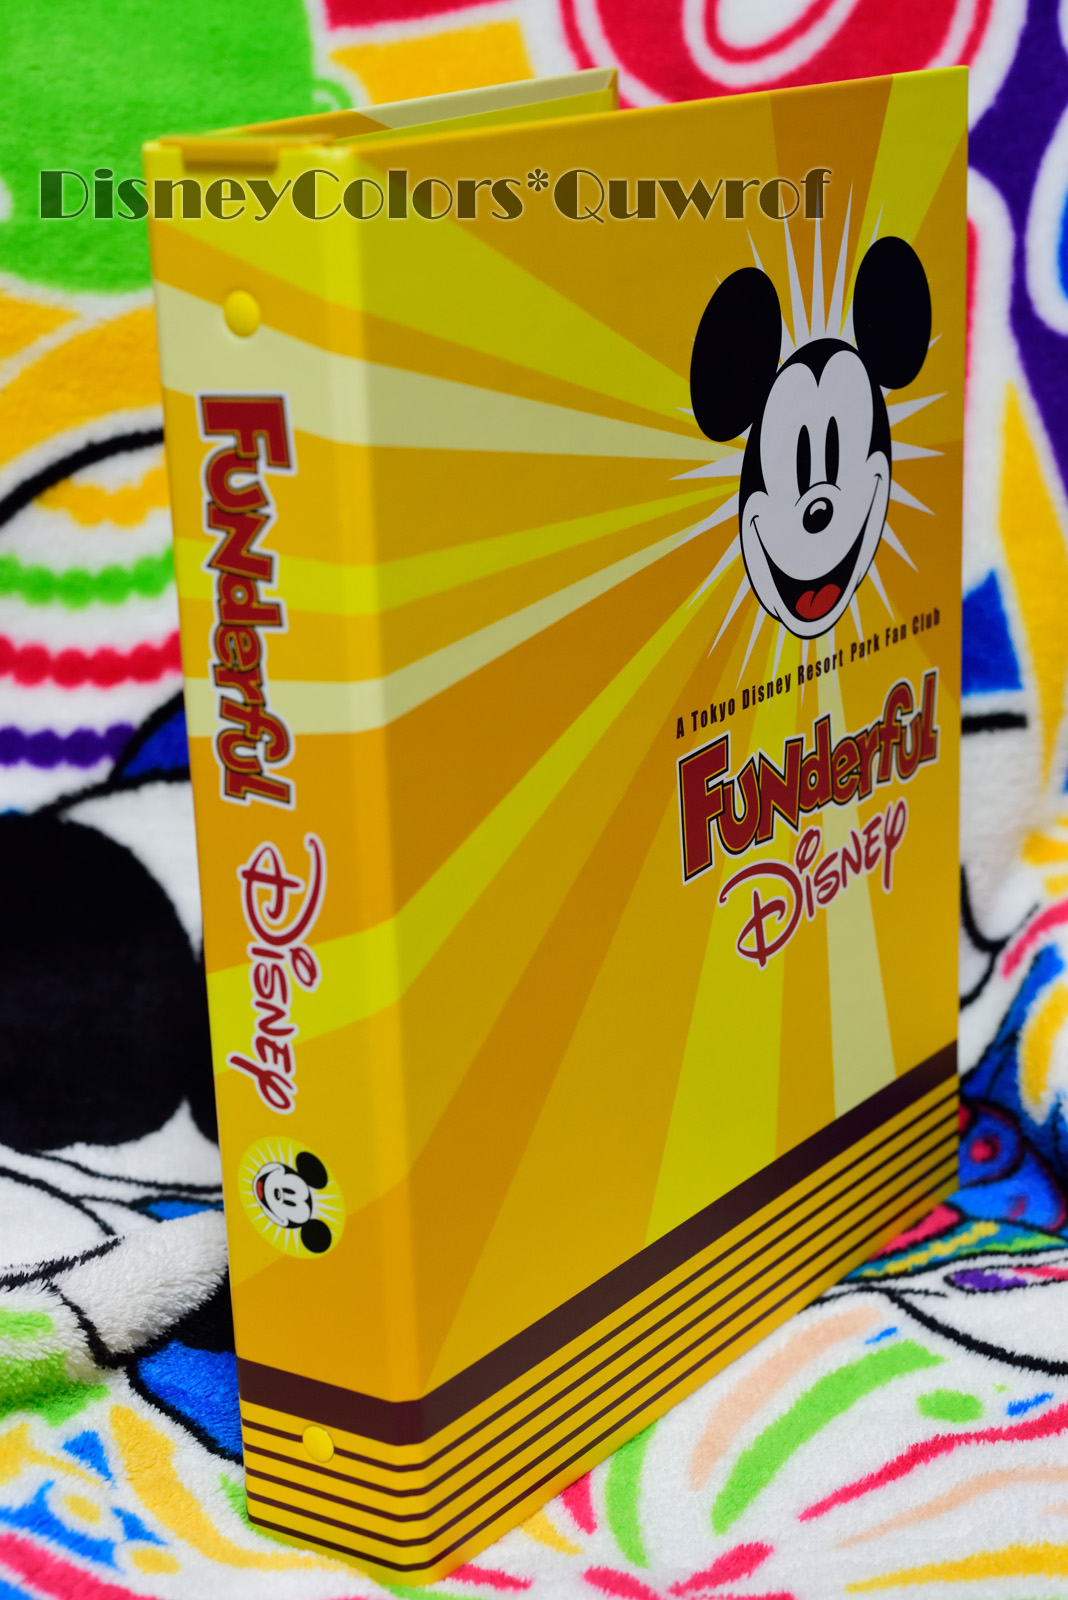 公式ファンクラブ ファンダフル ディズニー 会員誌専用バインダーが限定販売中 Disney Colors Blog